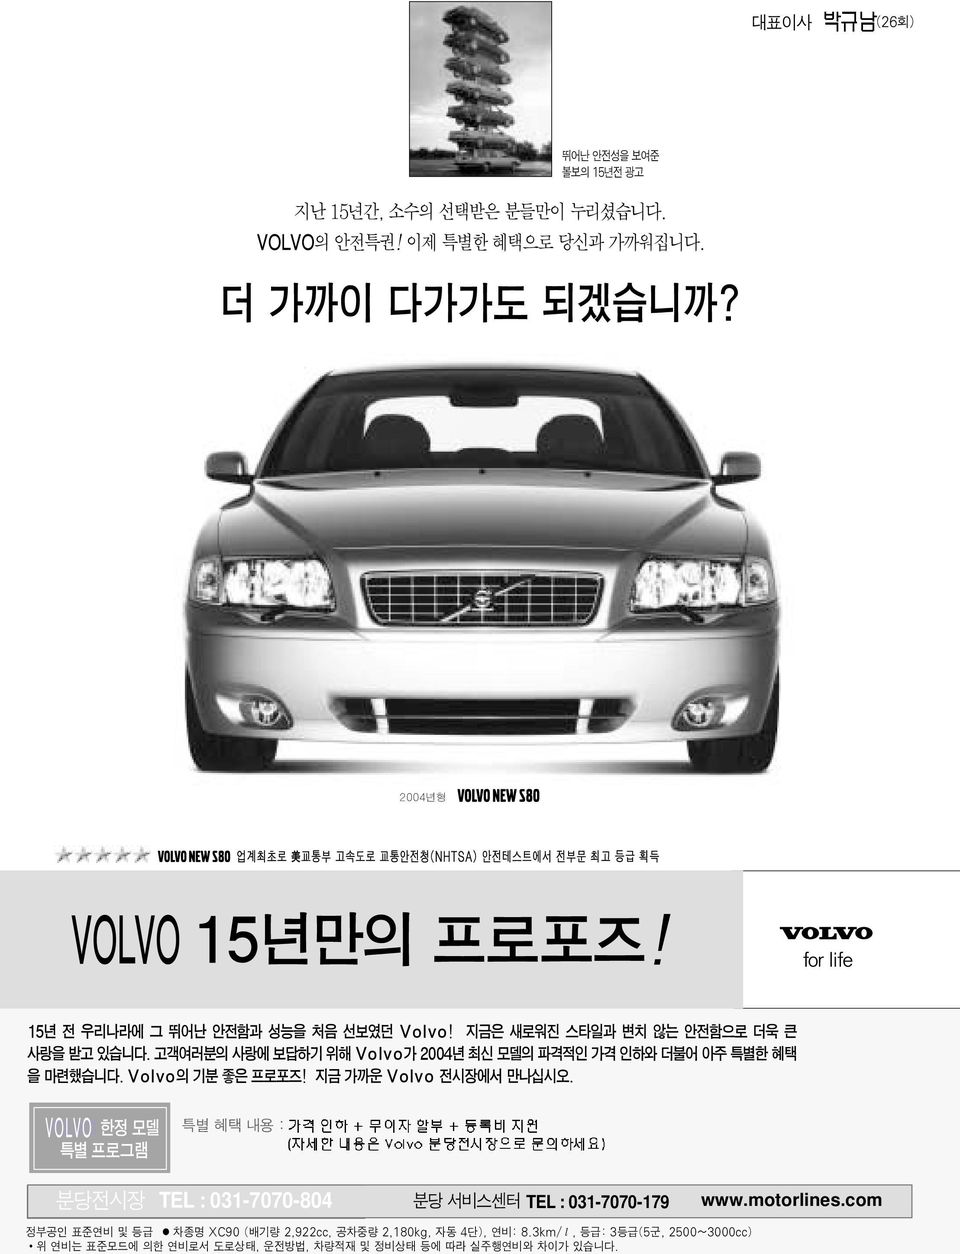 고객여러분의 사랑에 보답하기 위해 Volvo가 2004년 최신 모델의 파격적인 가격 인하와 더불어 아주 특별한 혜택 을 마련했습니다. Volvo의 기분 좋은 프로포즈! 지금 가까운 Volvo 전시장에서 만나십시오.